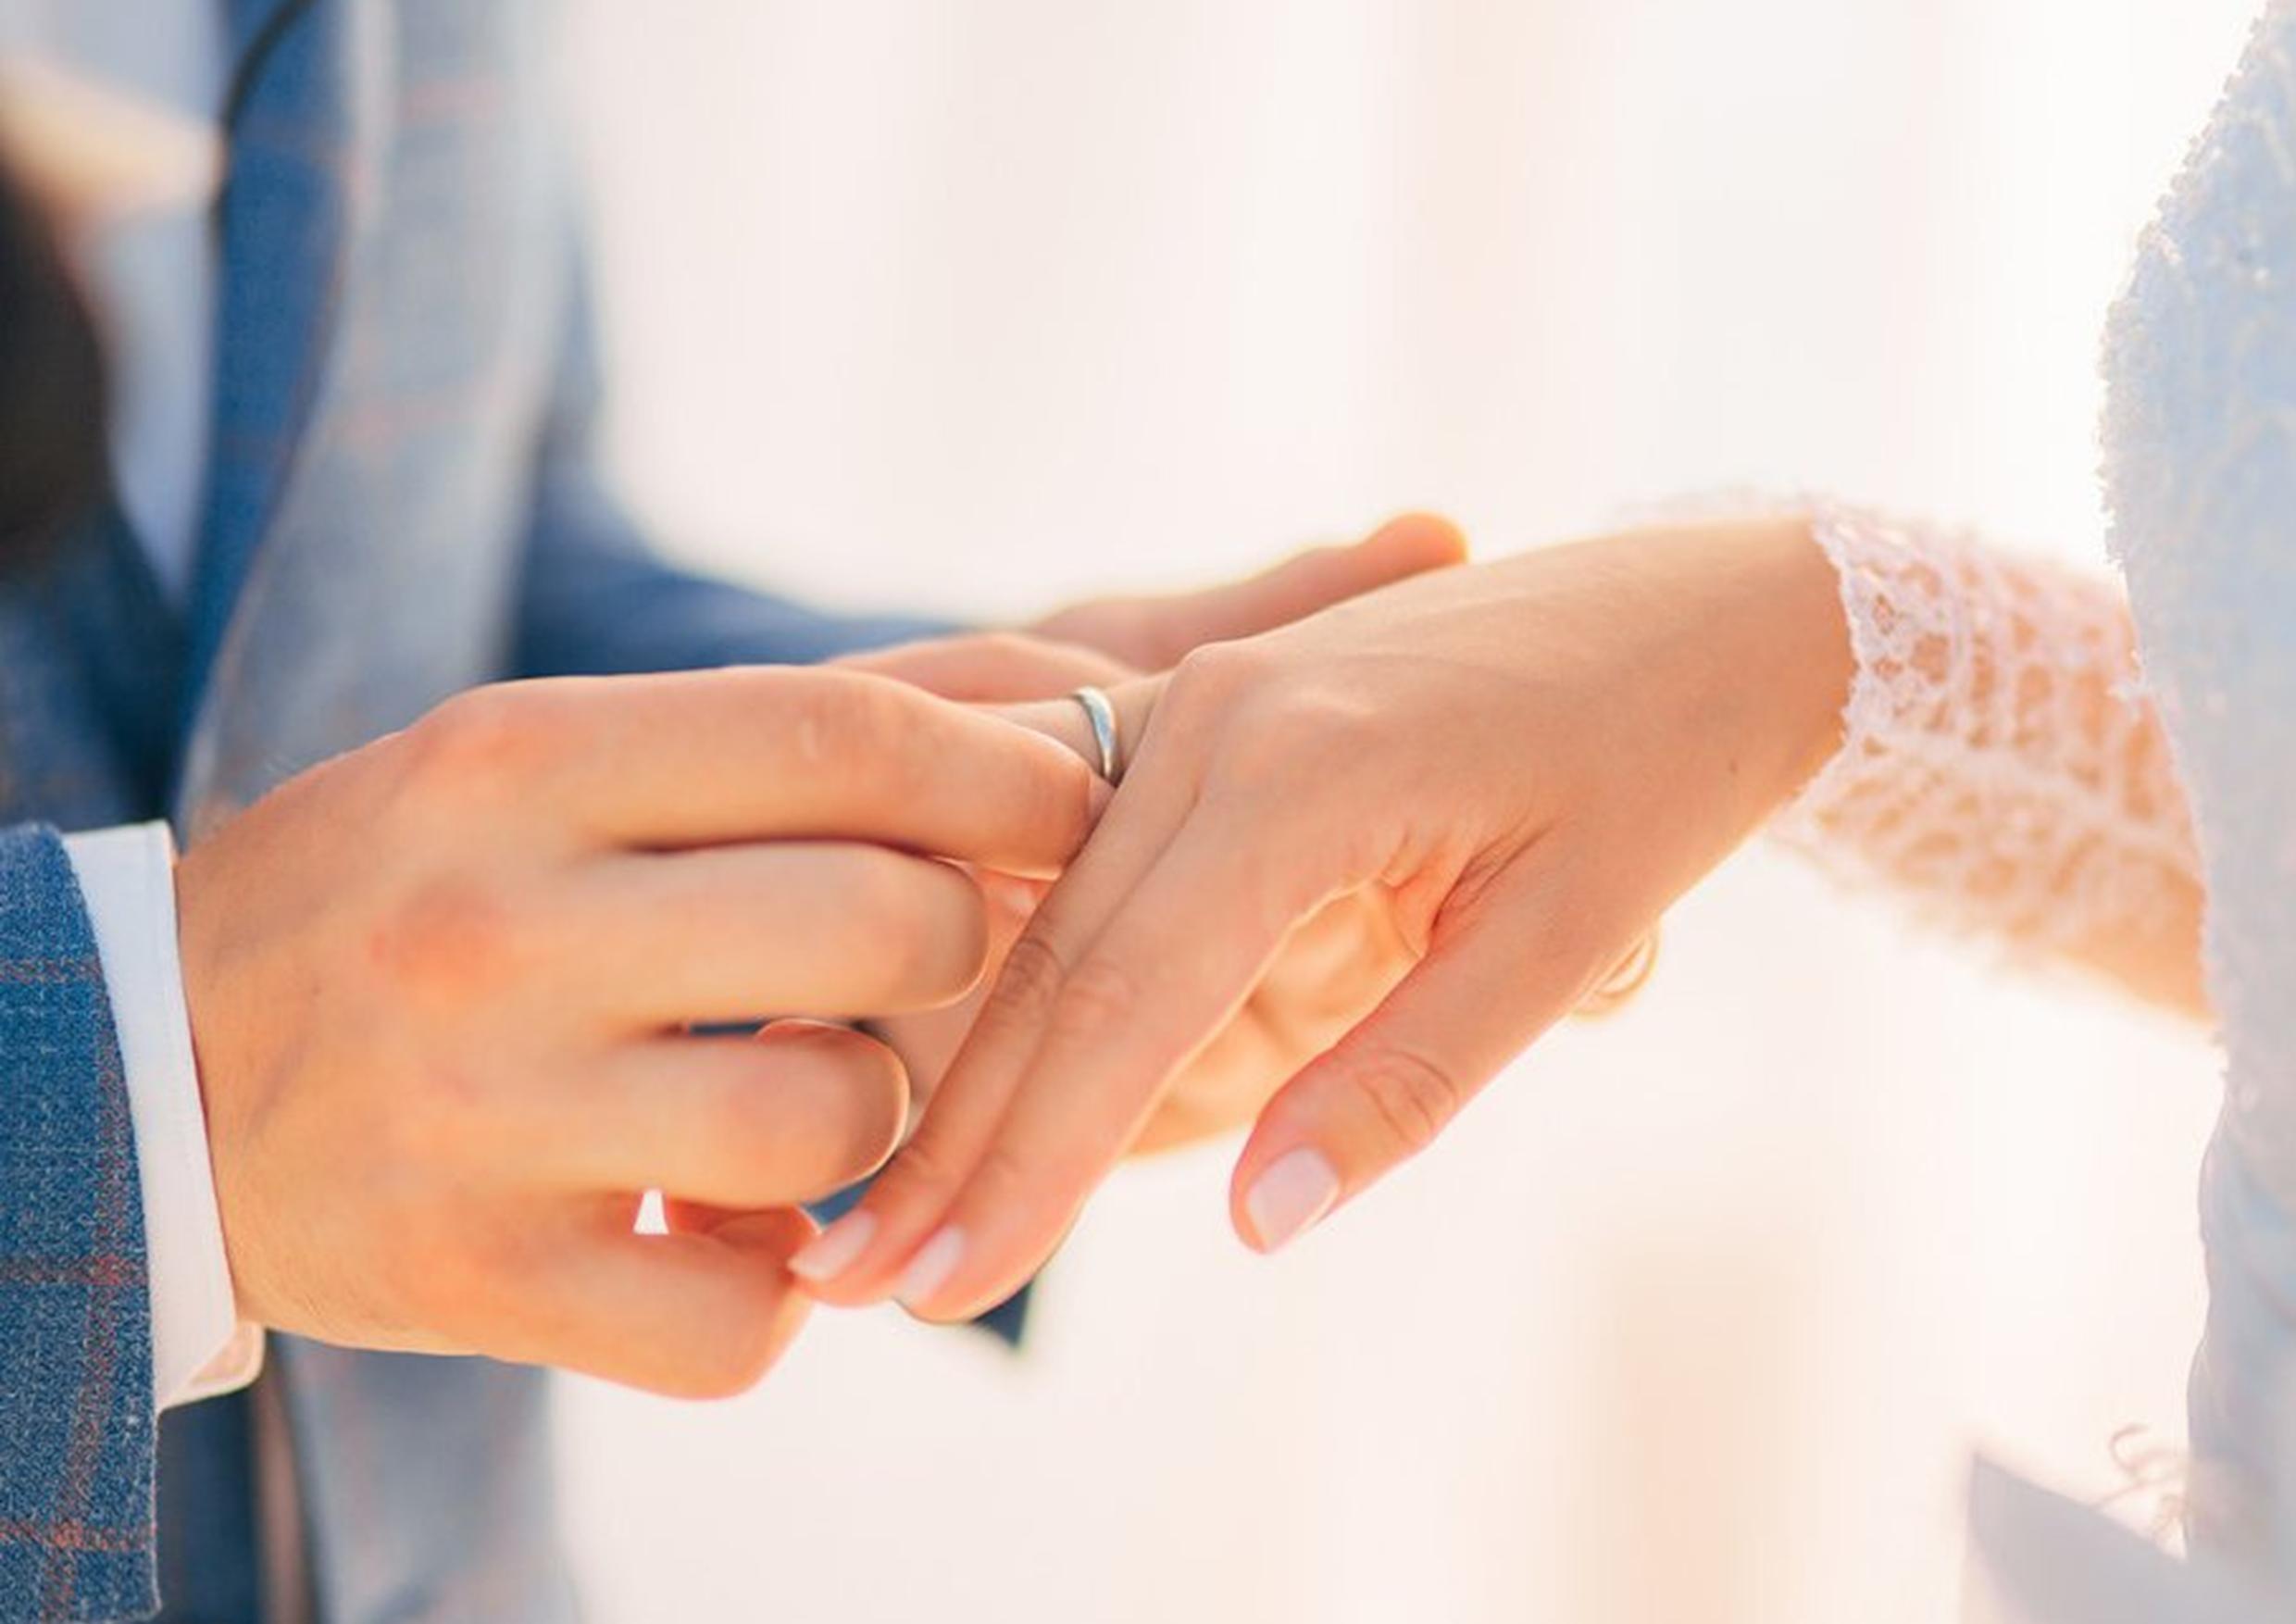 Sebelum Menikah, Sebaiknya Lakukan Rangkaian Tes Kesehatan Ini Bersama Pasangan 